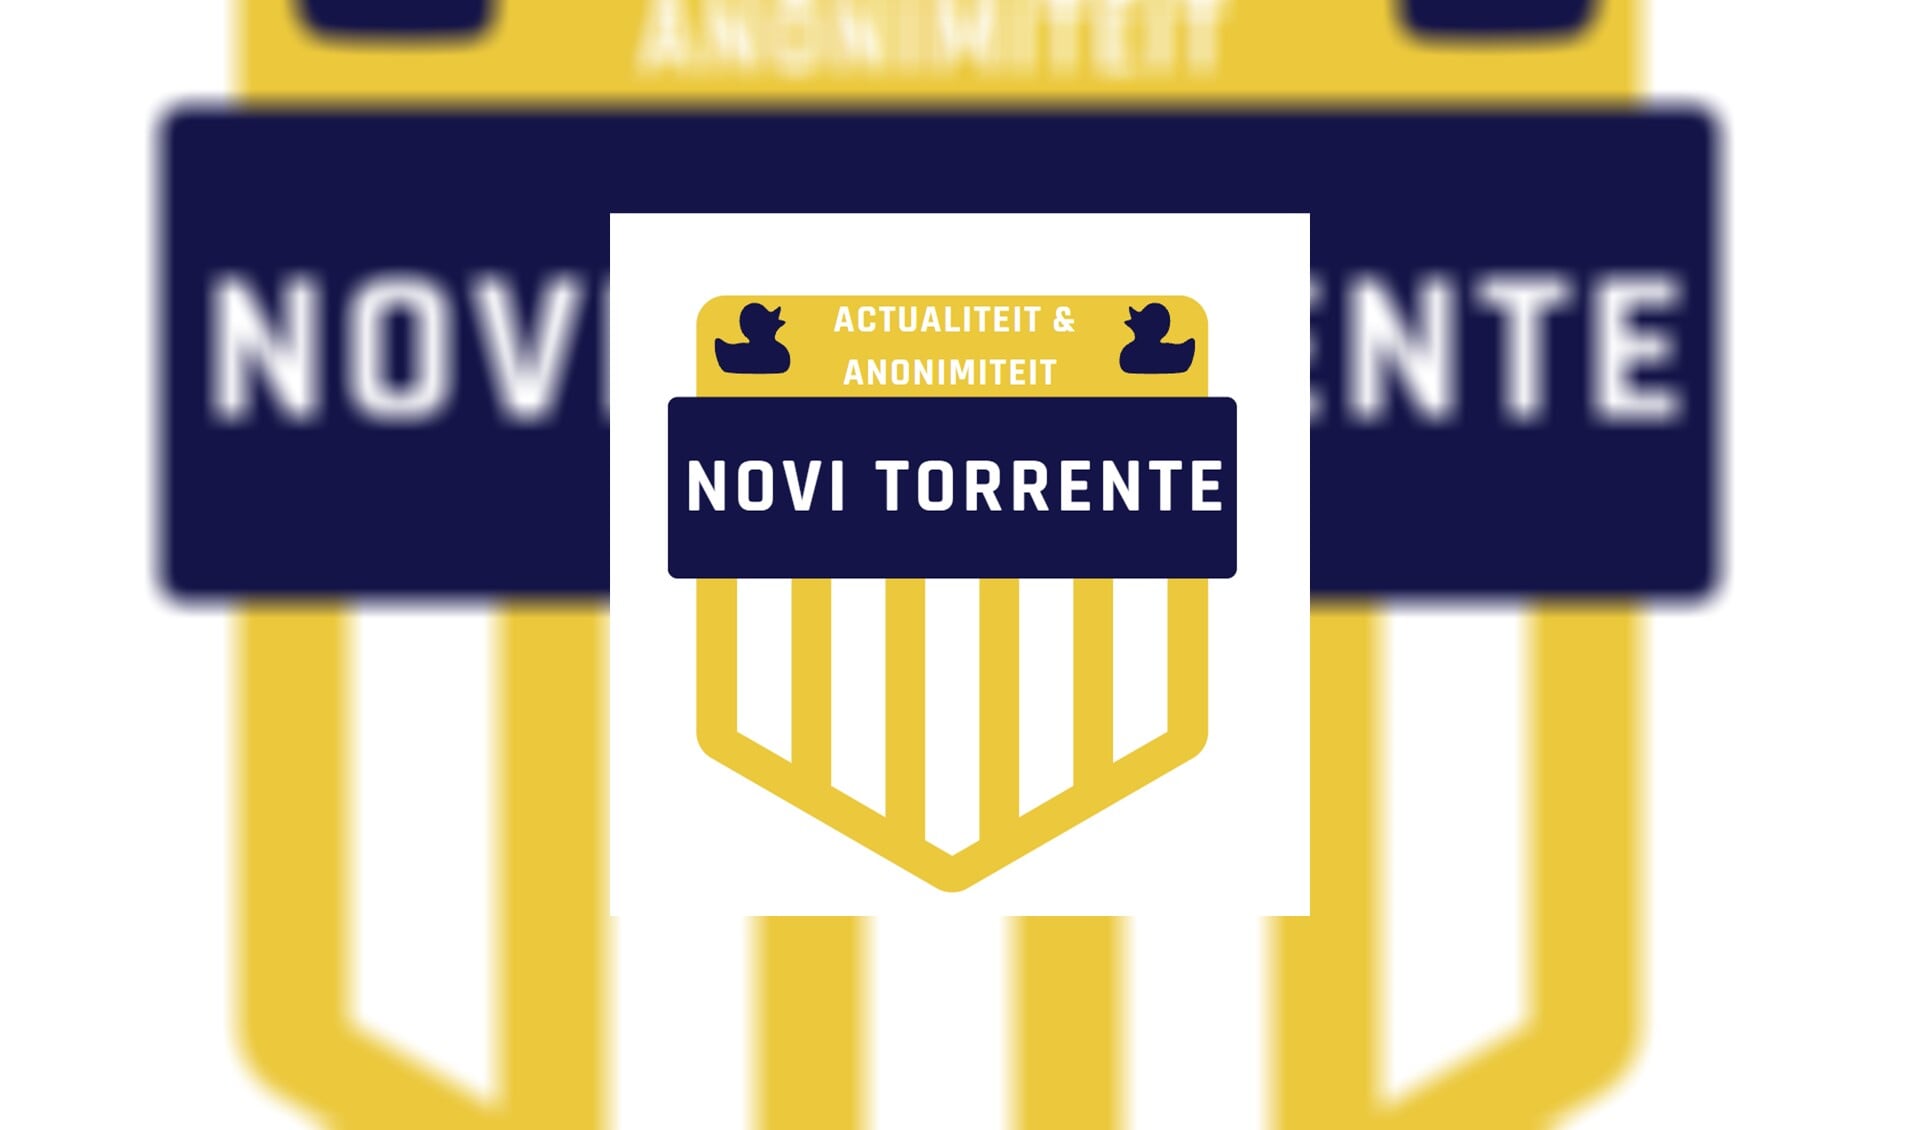 Novi Torrente klimt regelmatig in de pen: actueel en anoniem. 